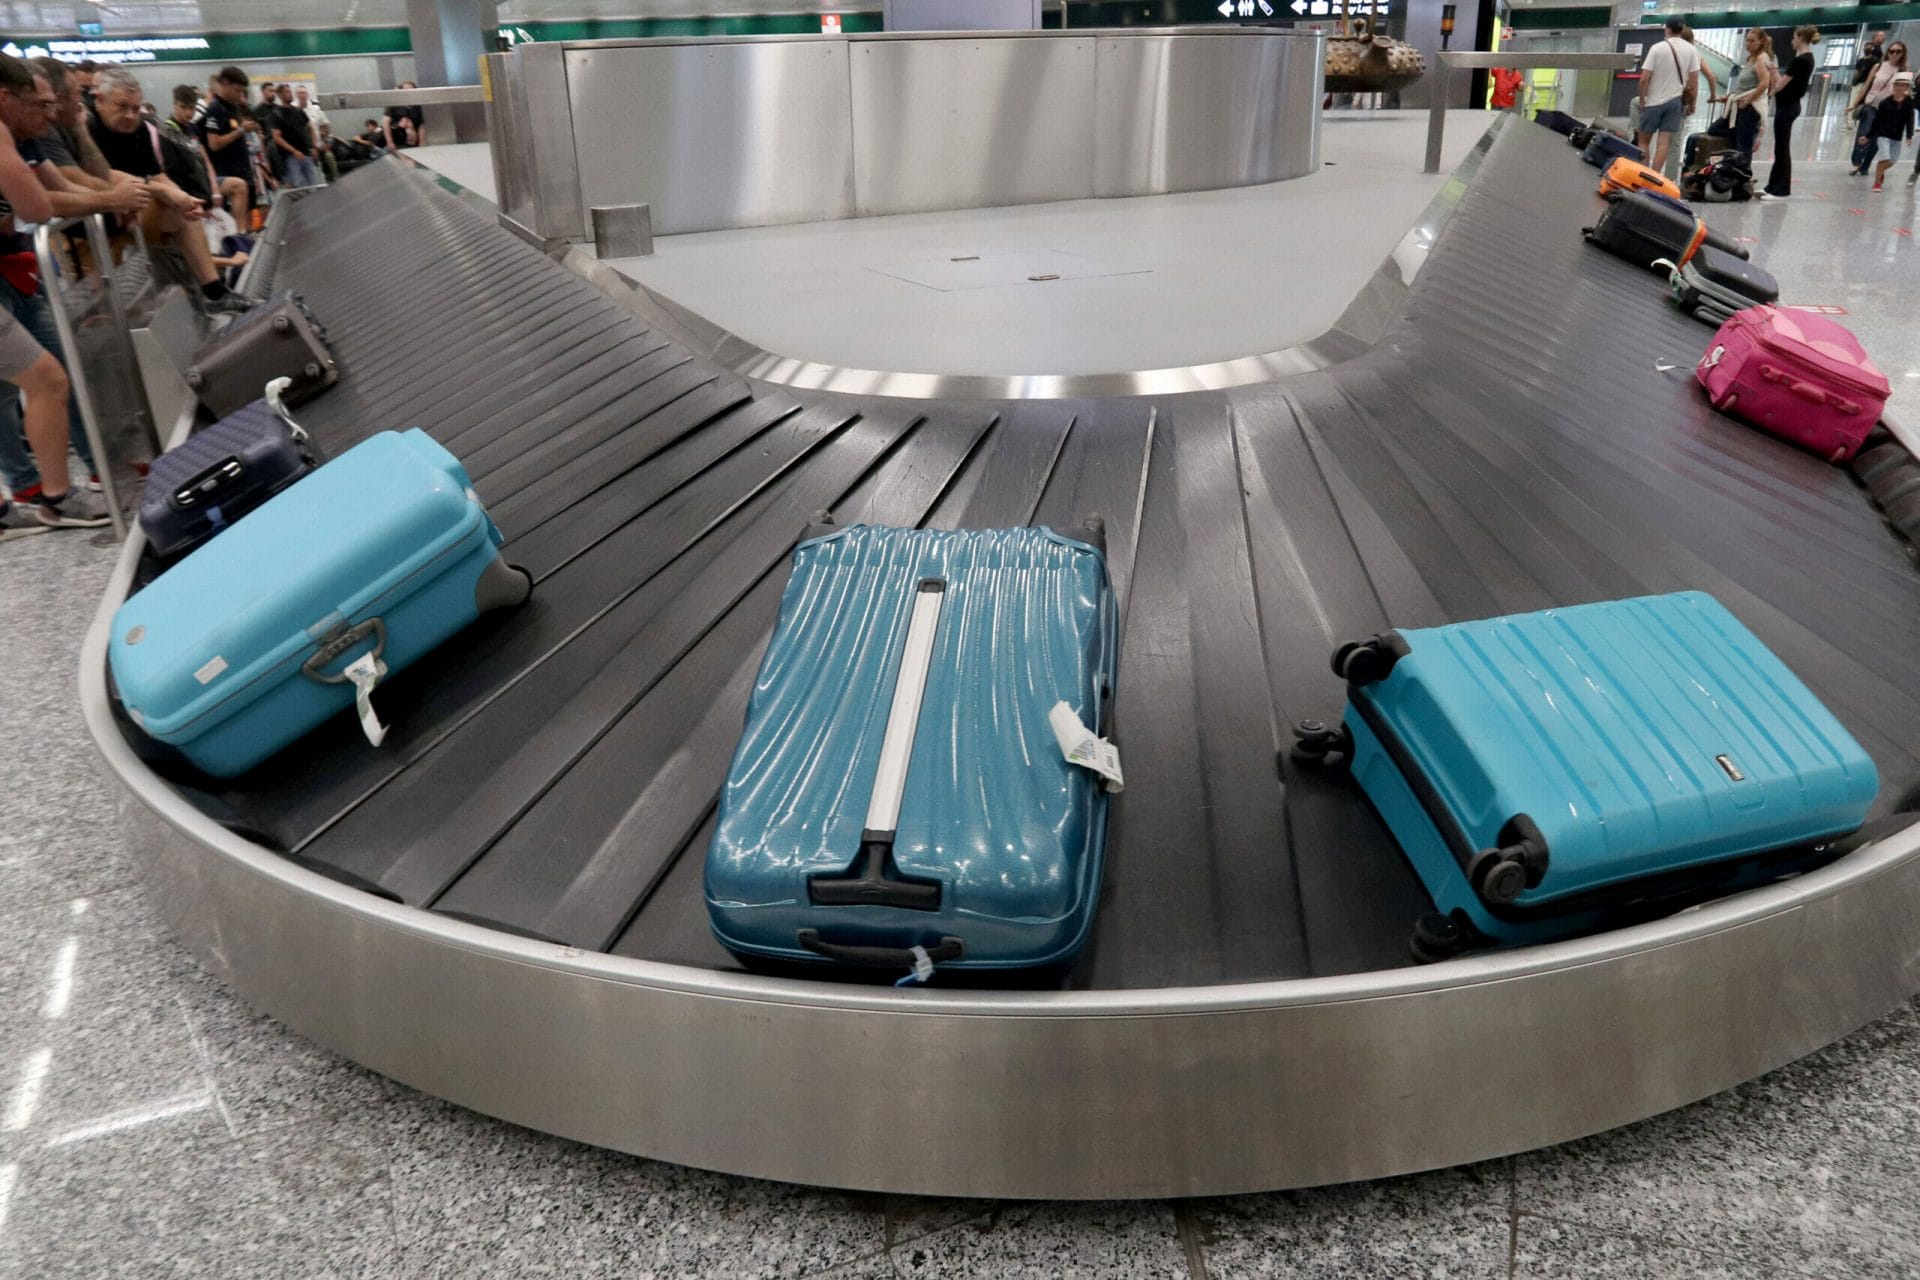 Ritiro bagagli nastro trasportatore Aeroporto di Malpensa